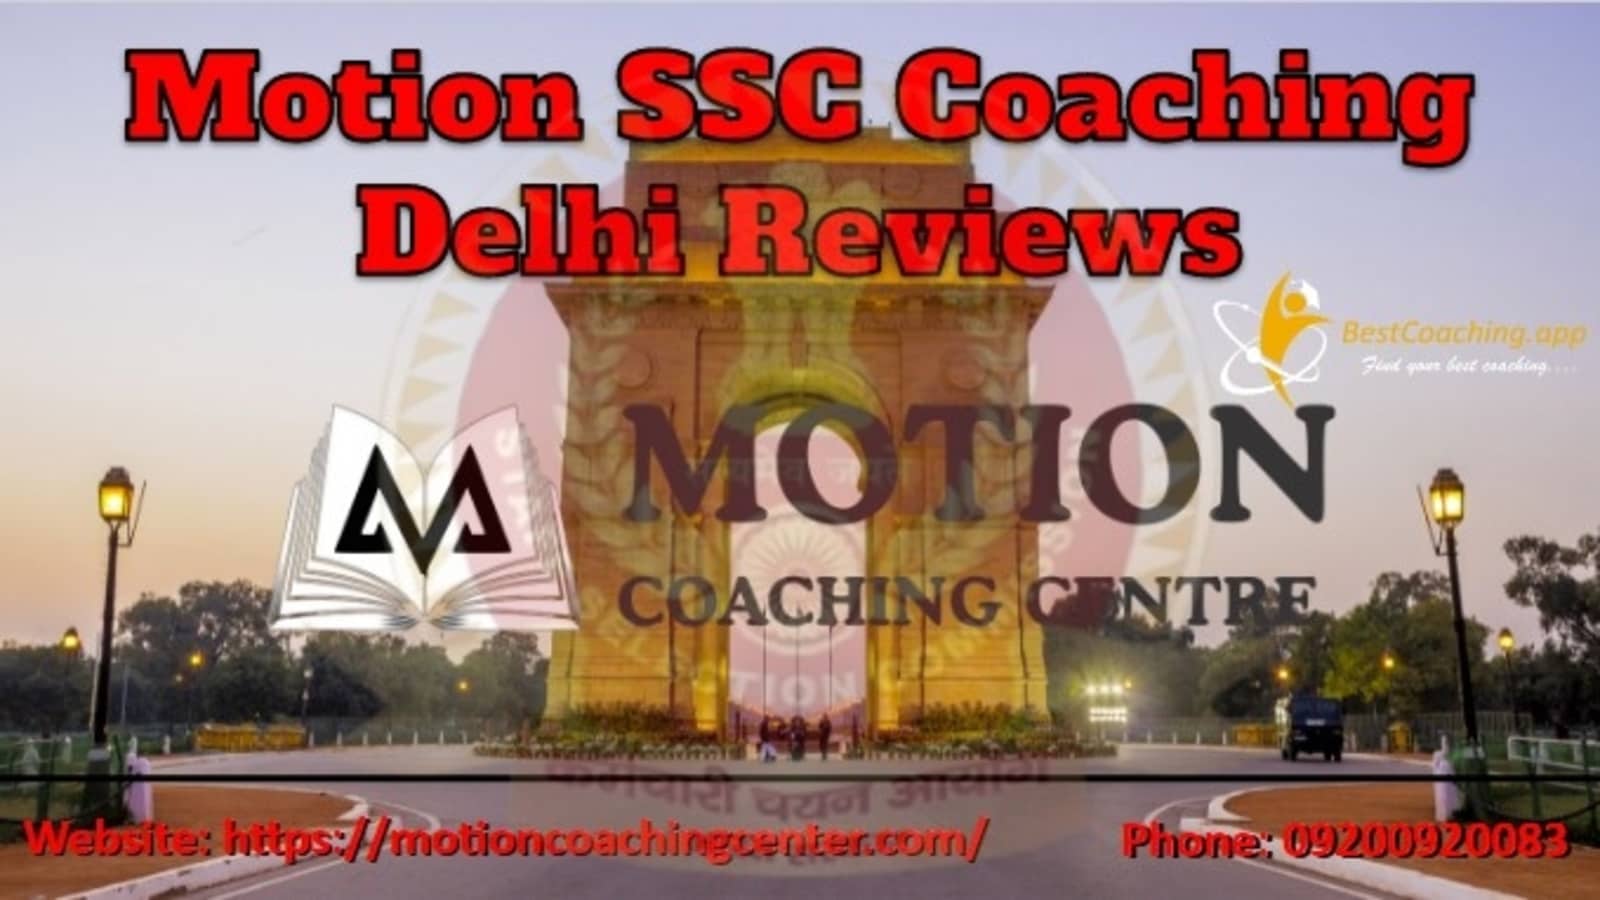 Motion SSC Coaching in Delhi